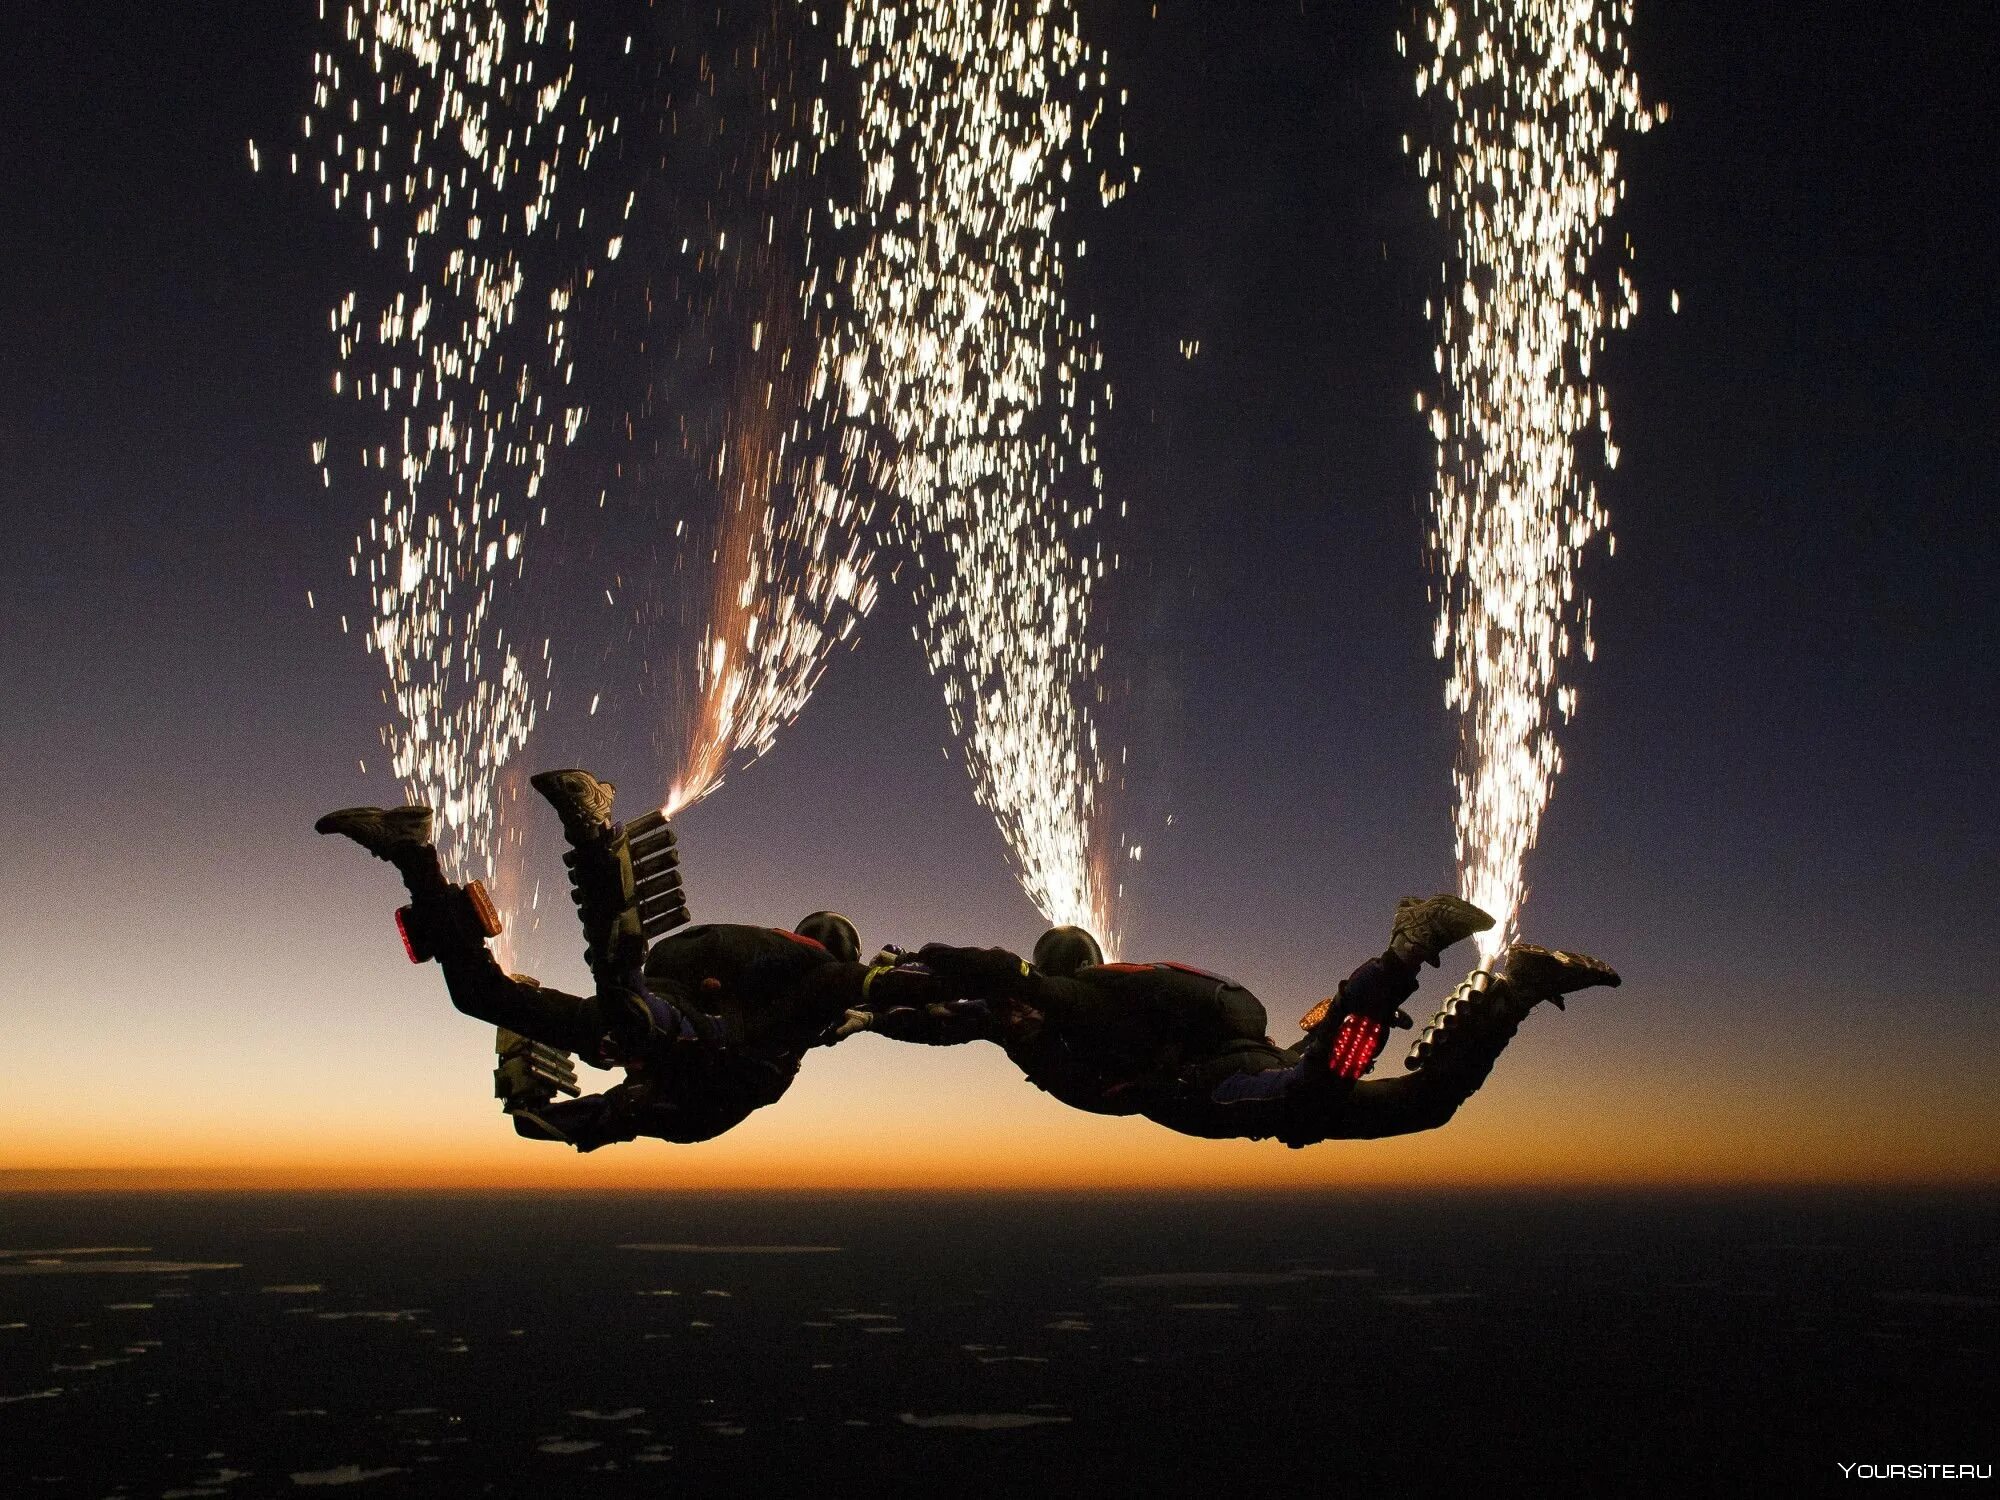 Романтика в воздухе. Парашютисты в воздухе. Красивый прыжок с парашютом. Парашютный спорт. Трюки в воздухе.